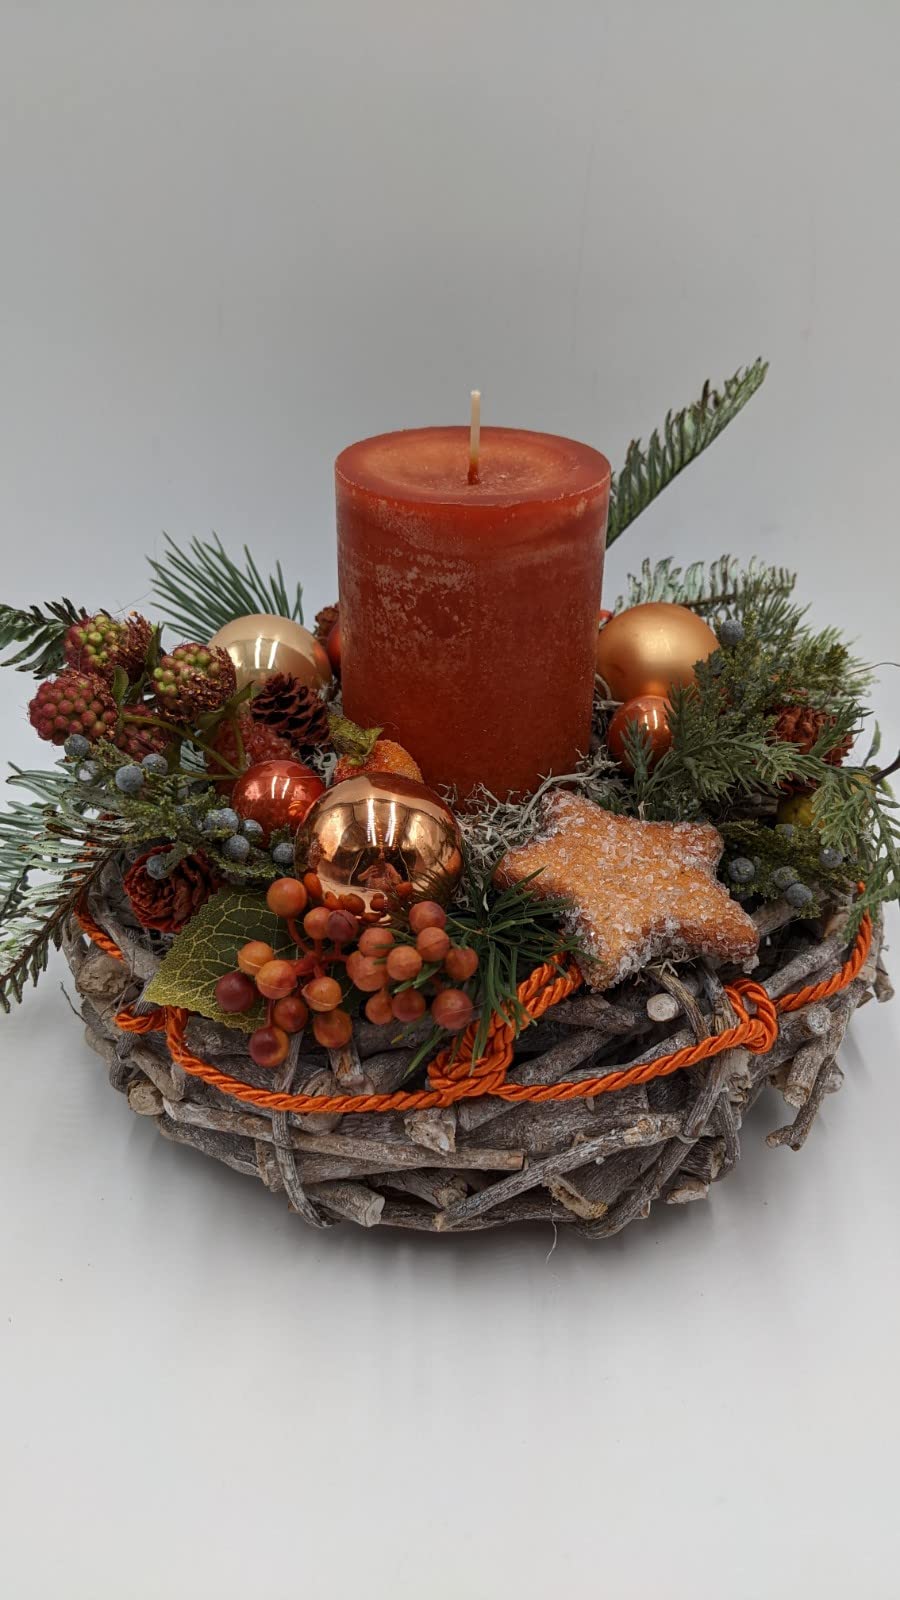 Wintergesteck Weihnachtsgesteck Tischgesteck Kugel Stern Keks Kerze Beeren Tanne orange natur